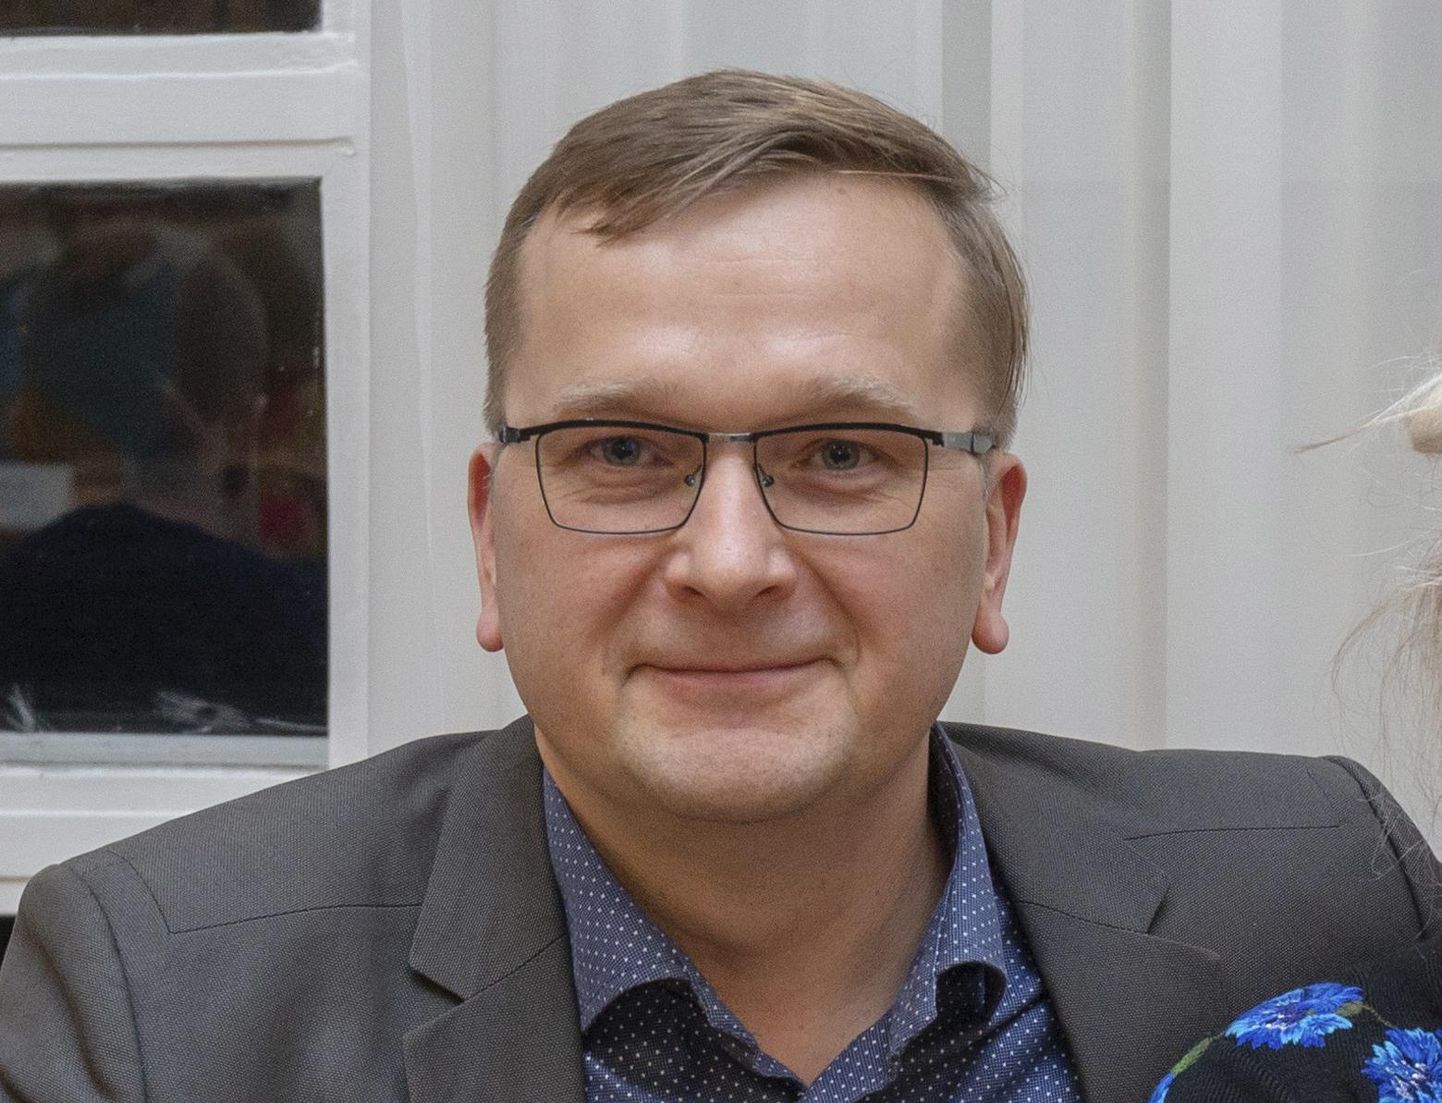 Viljandi volikogu liige, ettevõtja Rain Hüva on ekspeaminister Andrus Ansipiga päri, et niinimetatud Kaja Kallase probleemiga tuleb tegeleda.